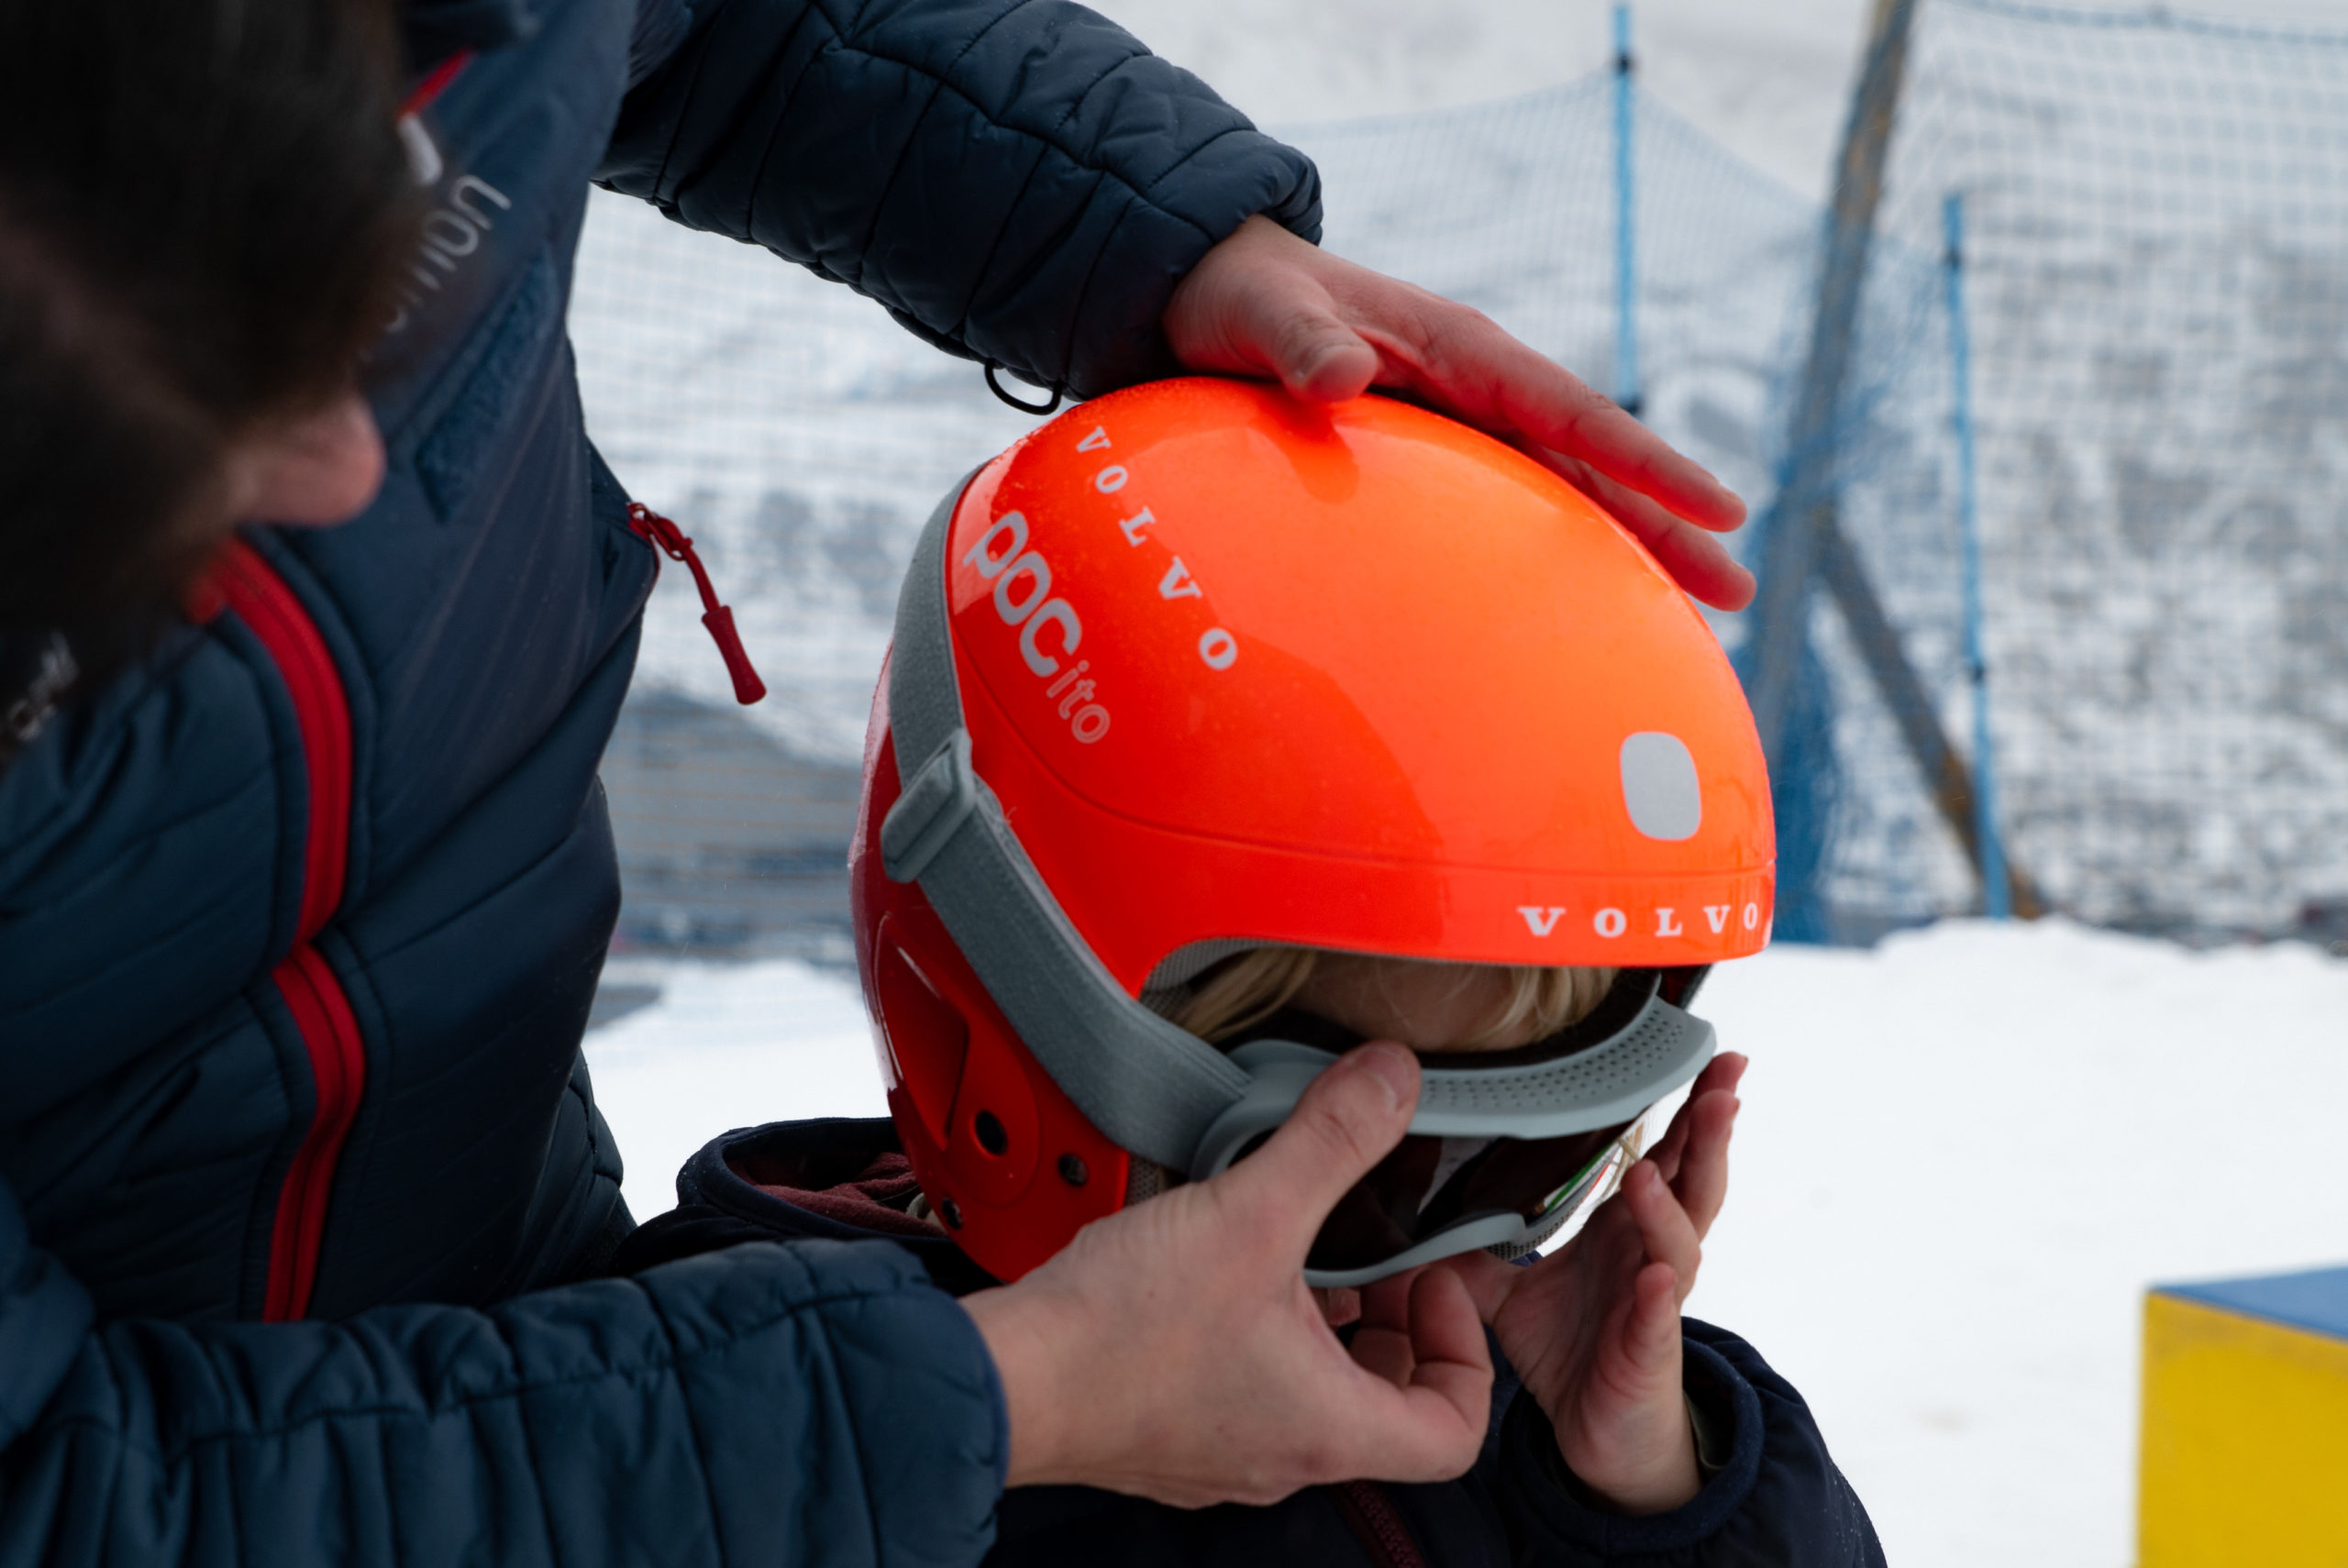 Si vas a esquiar, ¡no te olvides las gafas de sol!